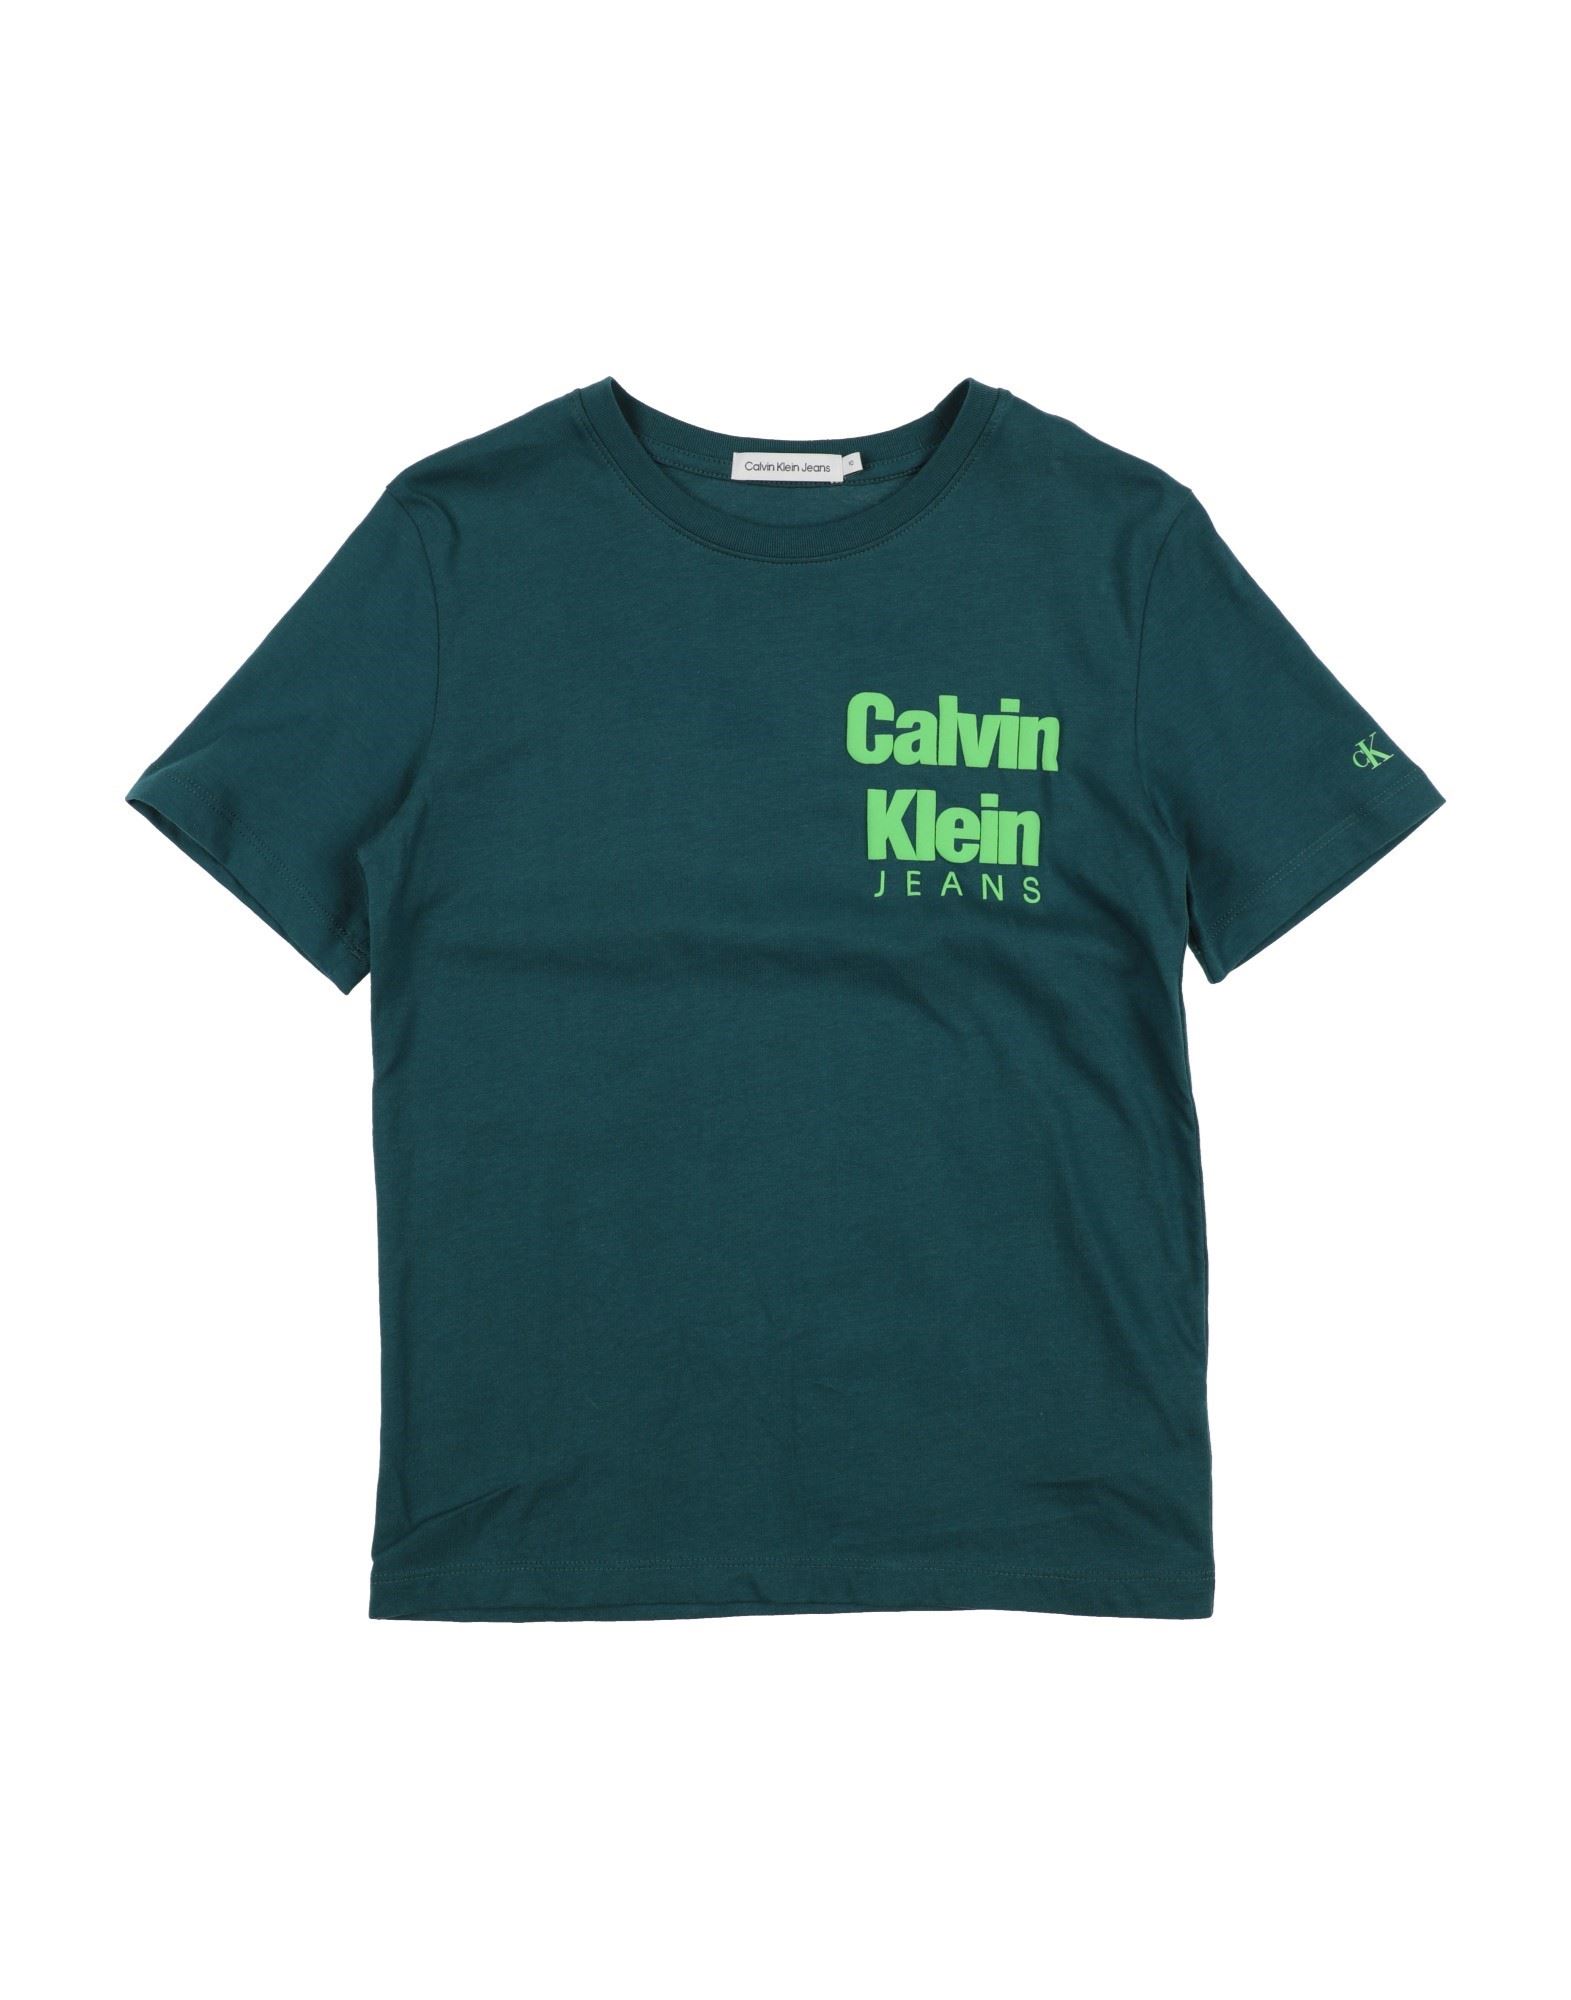 CALVIN KLEIN JEANS T-shirts Kinder Petroleum von CALVIN KLEIN JEANS